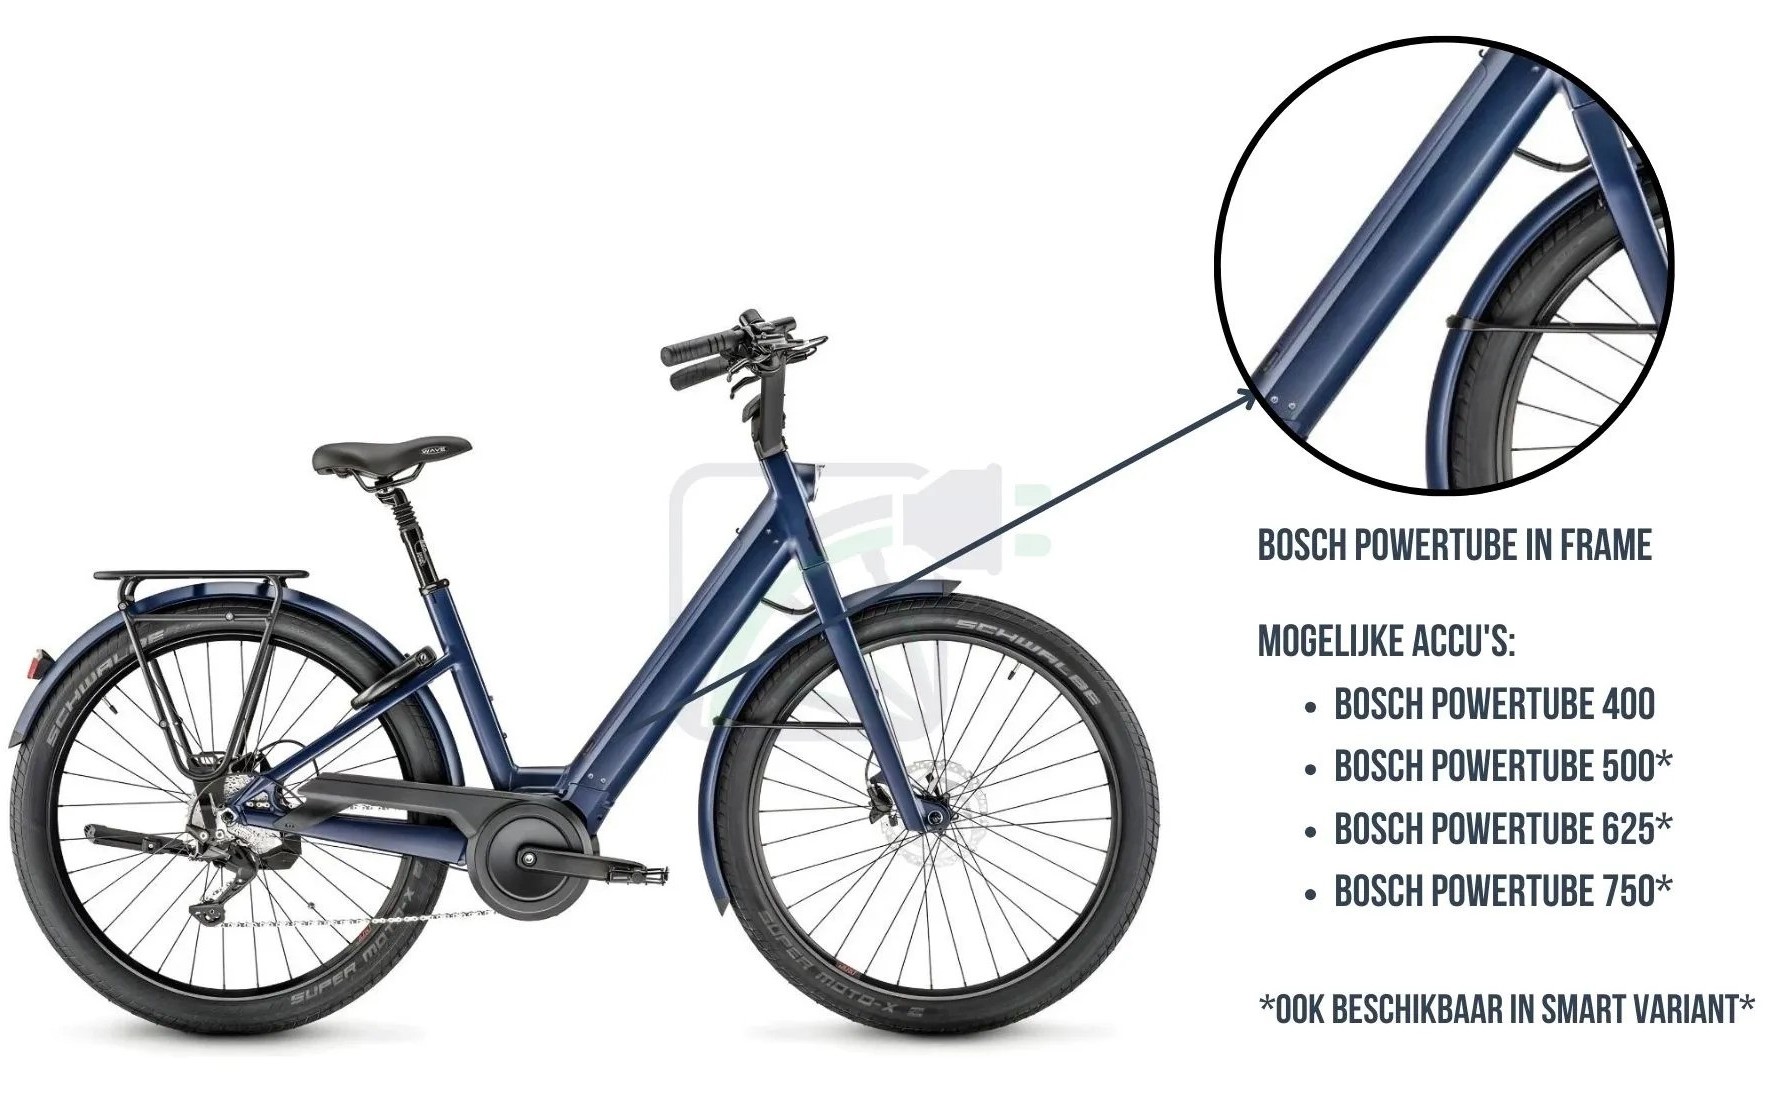 .Foto de una bicicleta eléctrica, destacando la batería de la bicicleta. La batería que se muestra aquí es la Bosch PowerTube. Además, también se nombran las diferentes baterías disponibles para esta bicicleta. Estas son las: Bosch PowerTube 400, 500, 625 y 750. Estas baterías son para ella variantes SMART y no SMART.